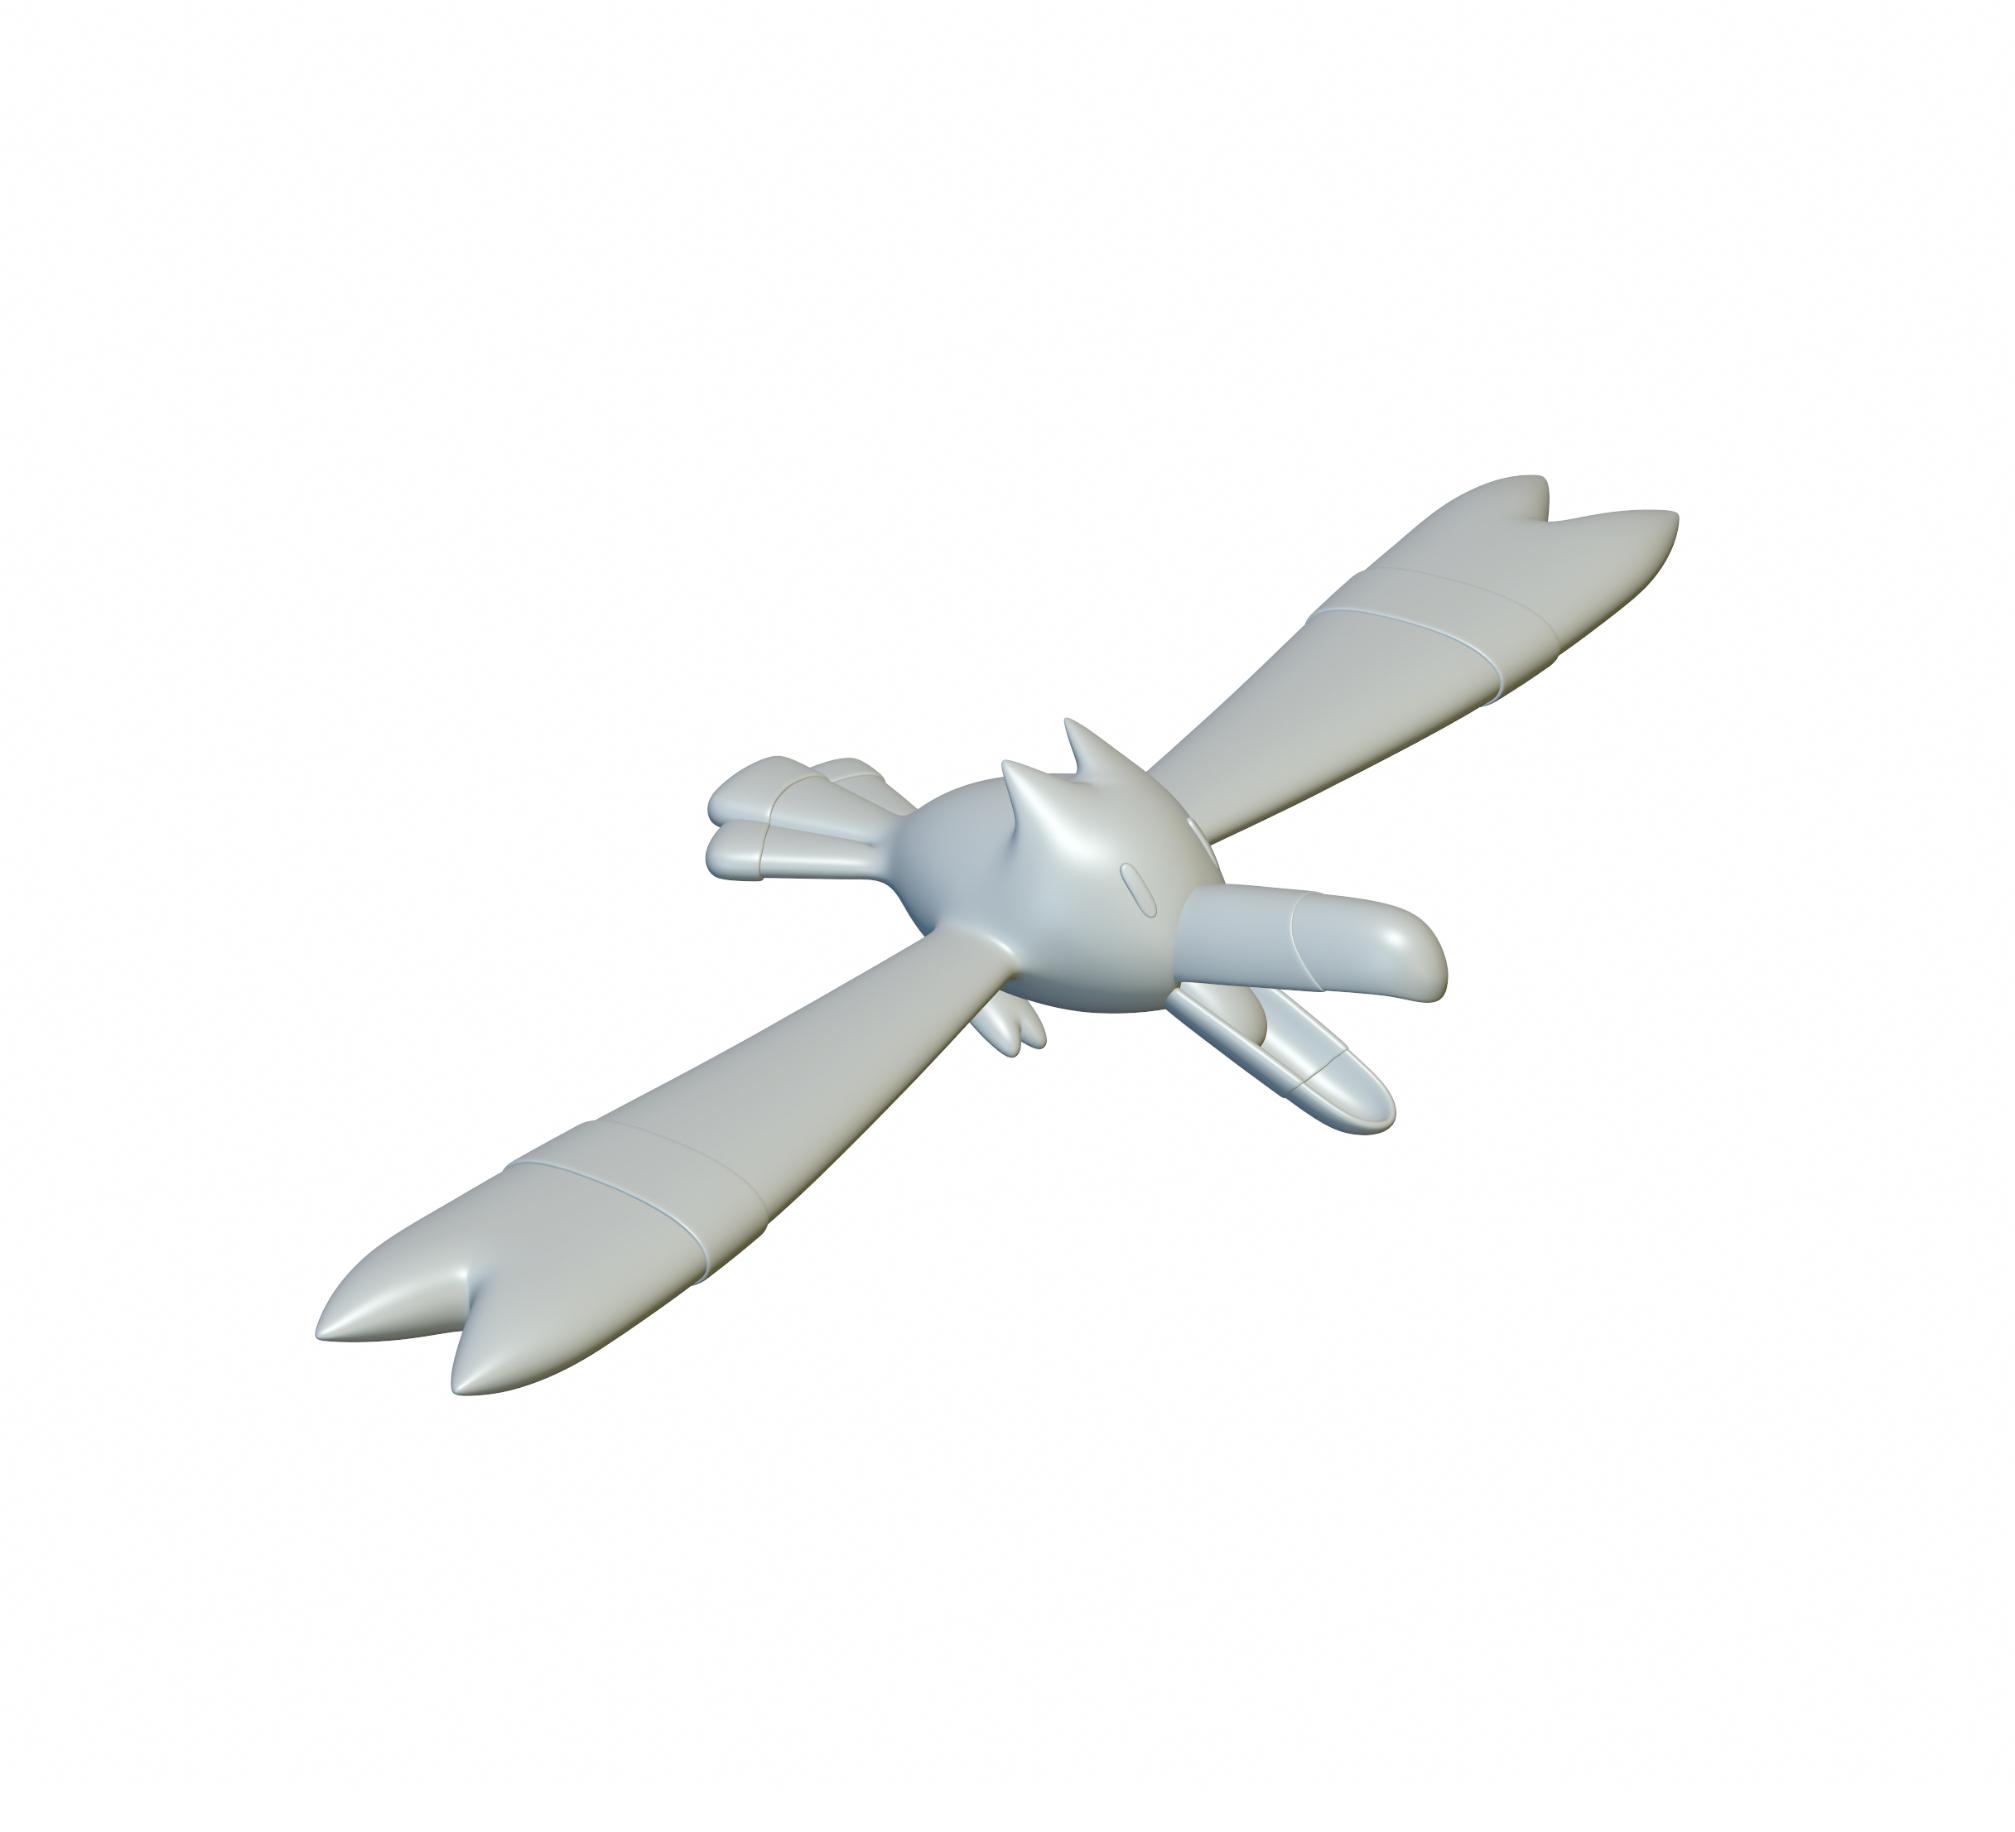 Pokemon Wingull #278 - Optimized for 3D Printing 3d model